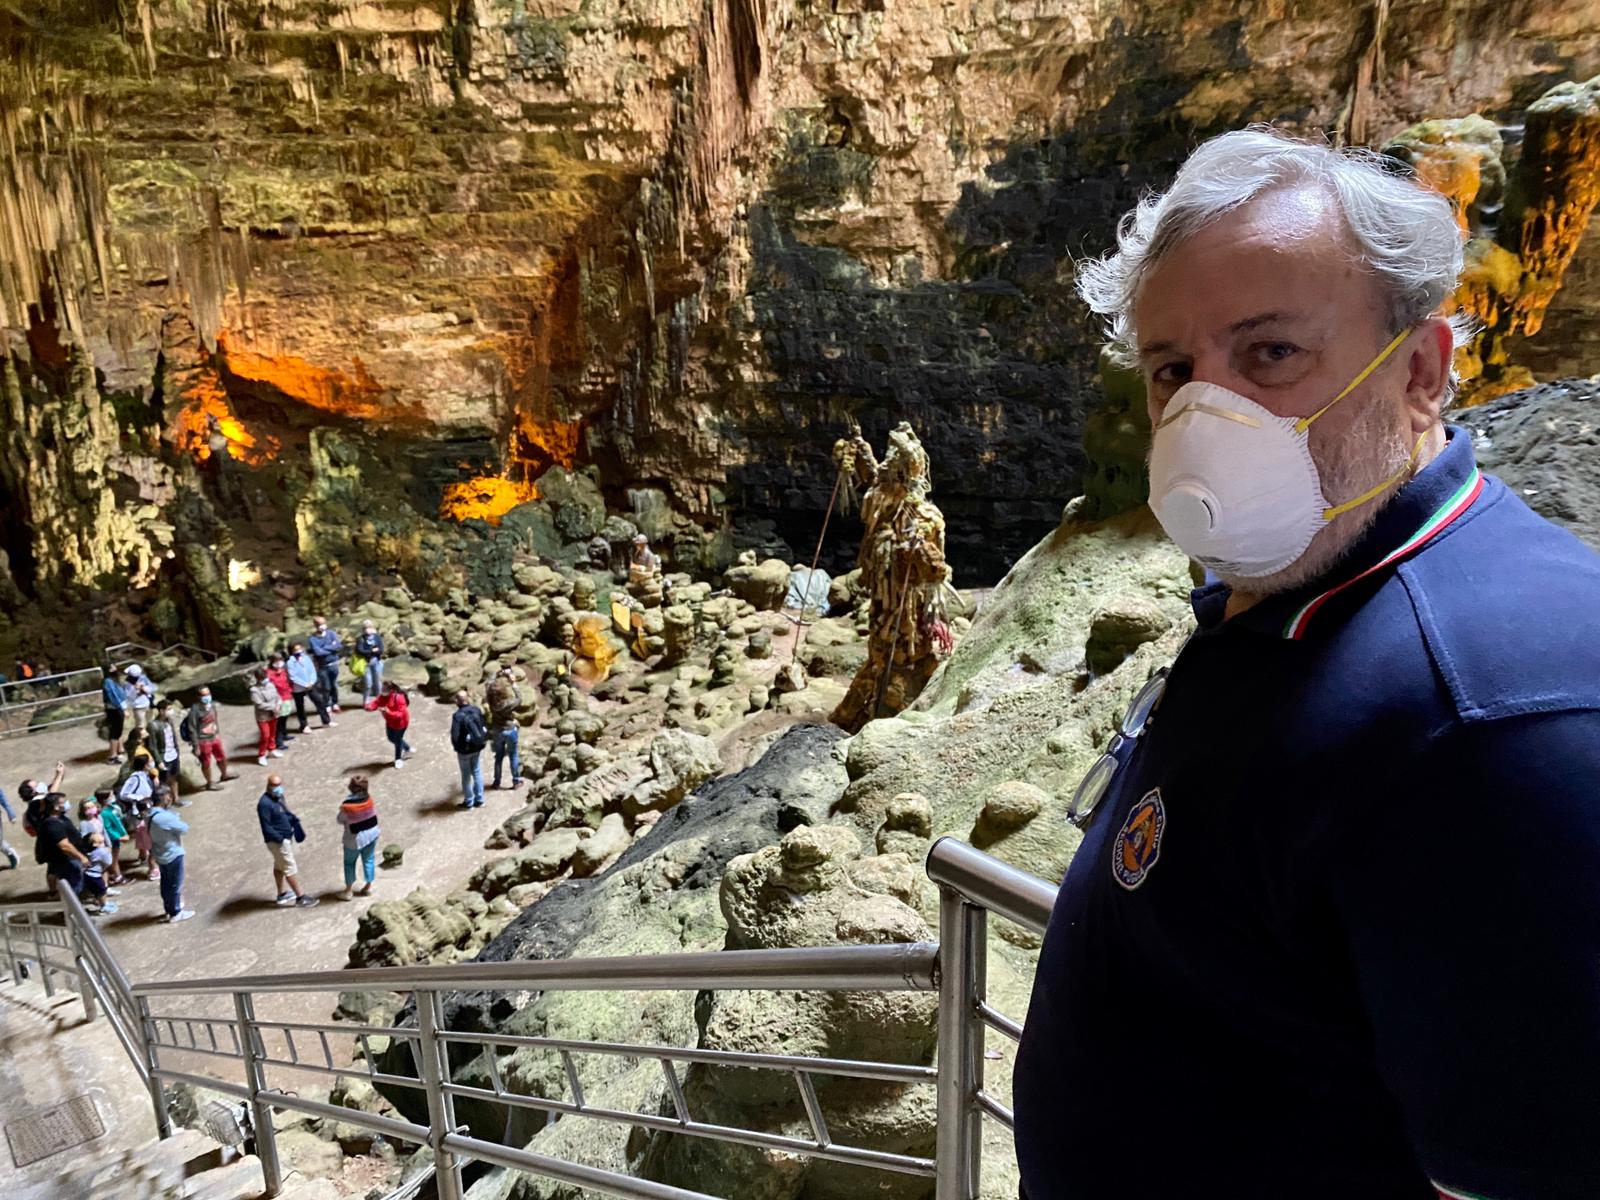 Galleria Emiliano alla riapertura delle Grotte di Castellana: “venite a visitarle, sono uniche al mondo” - Diapositiva 13 di 13